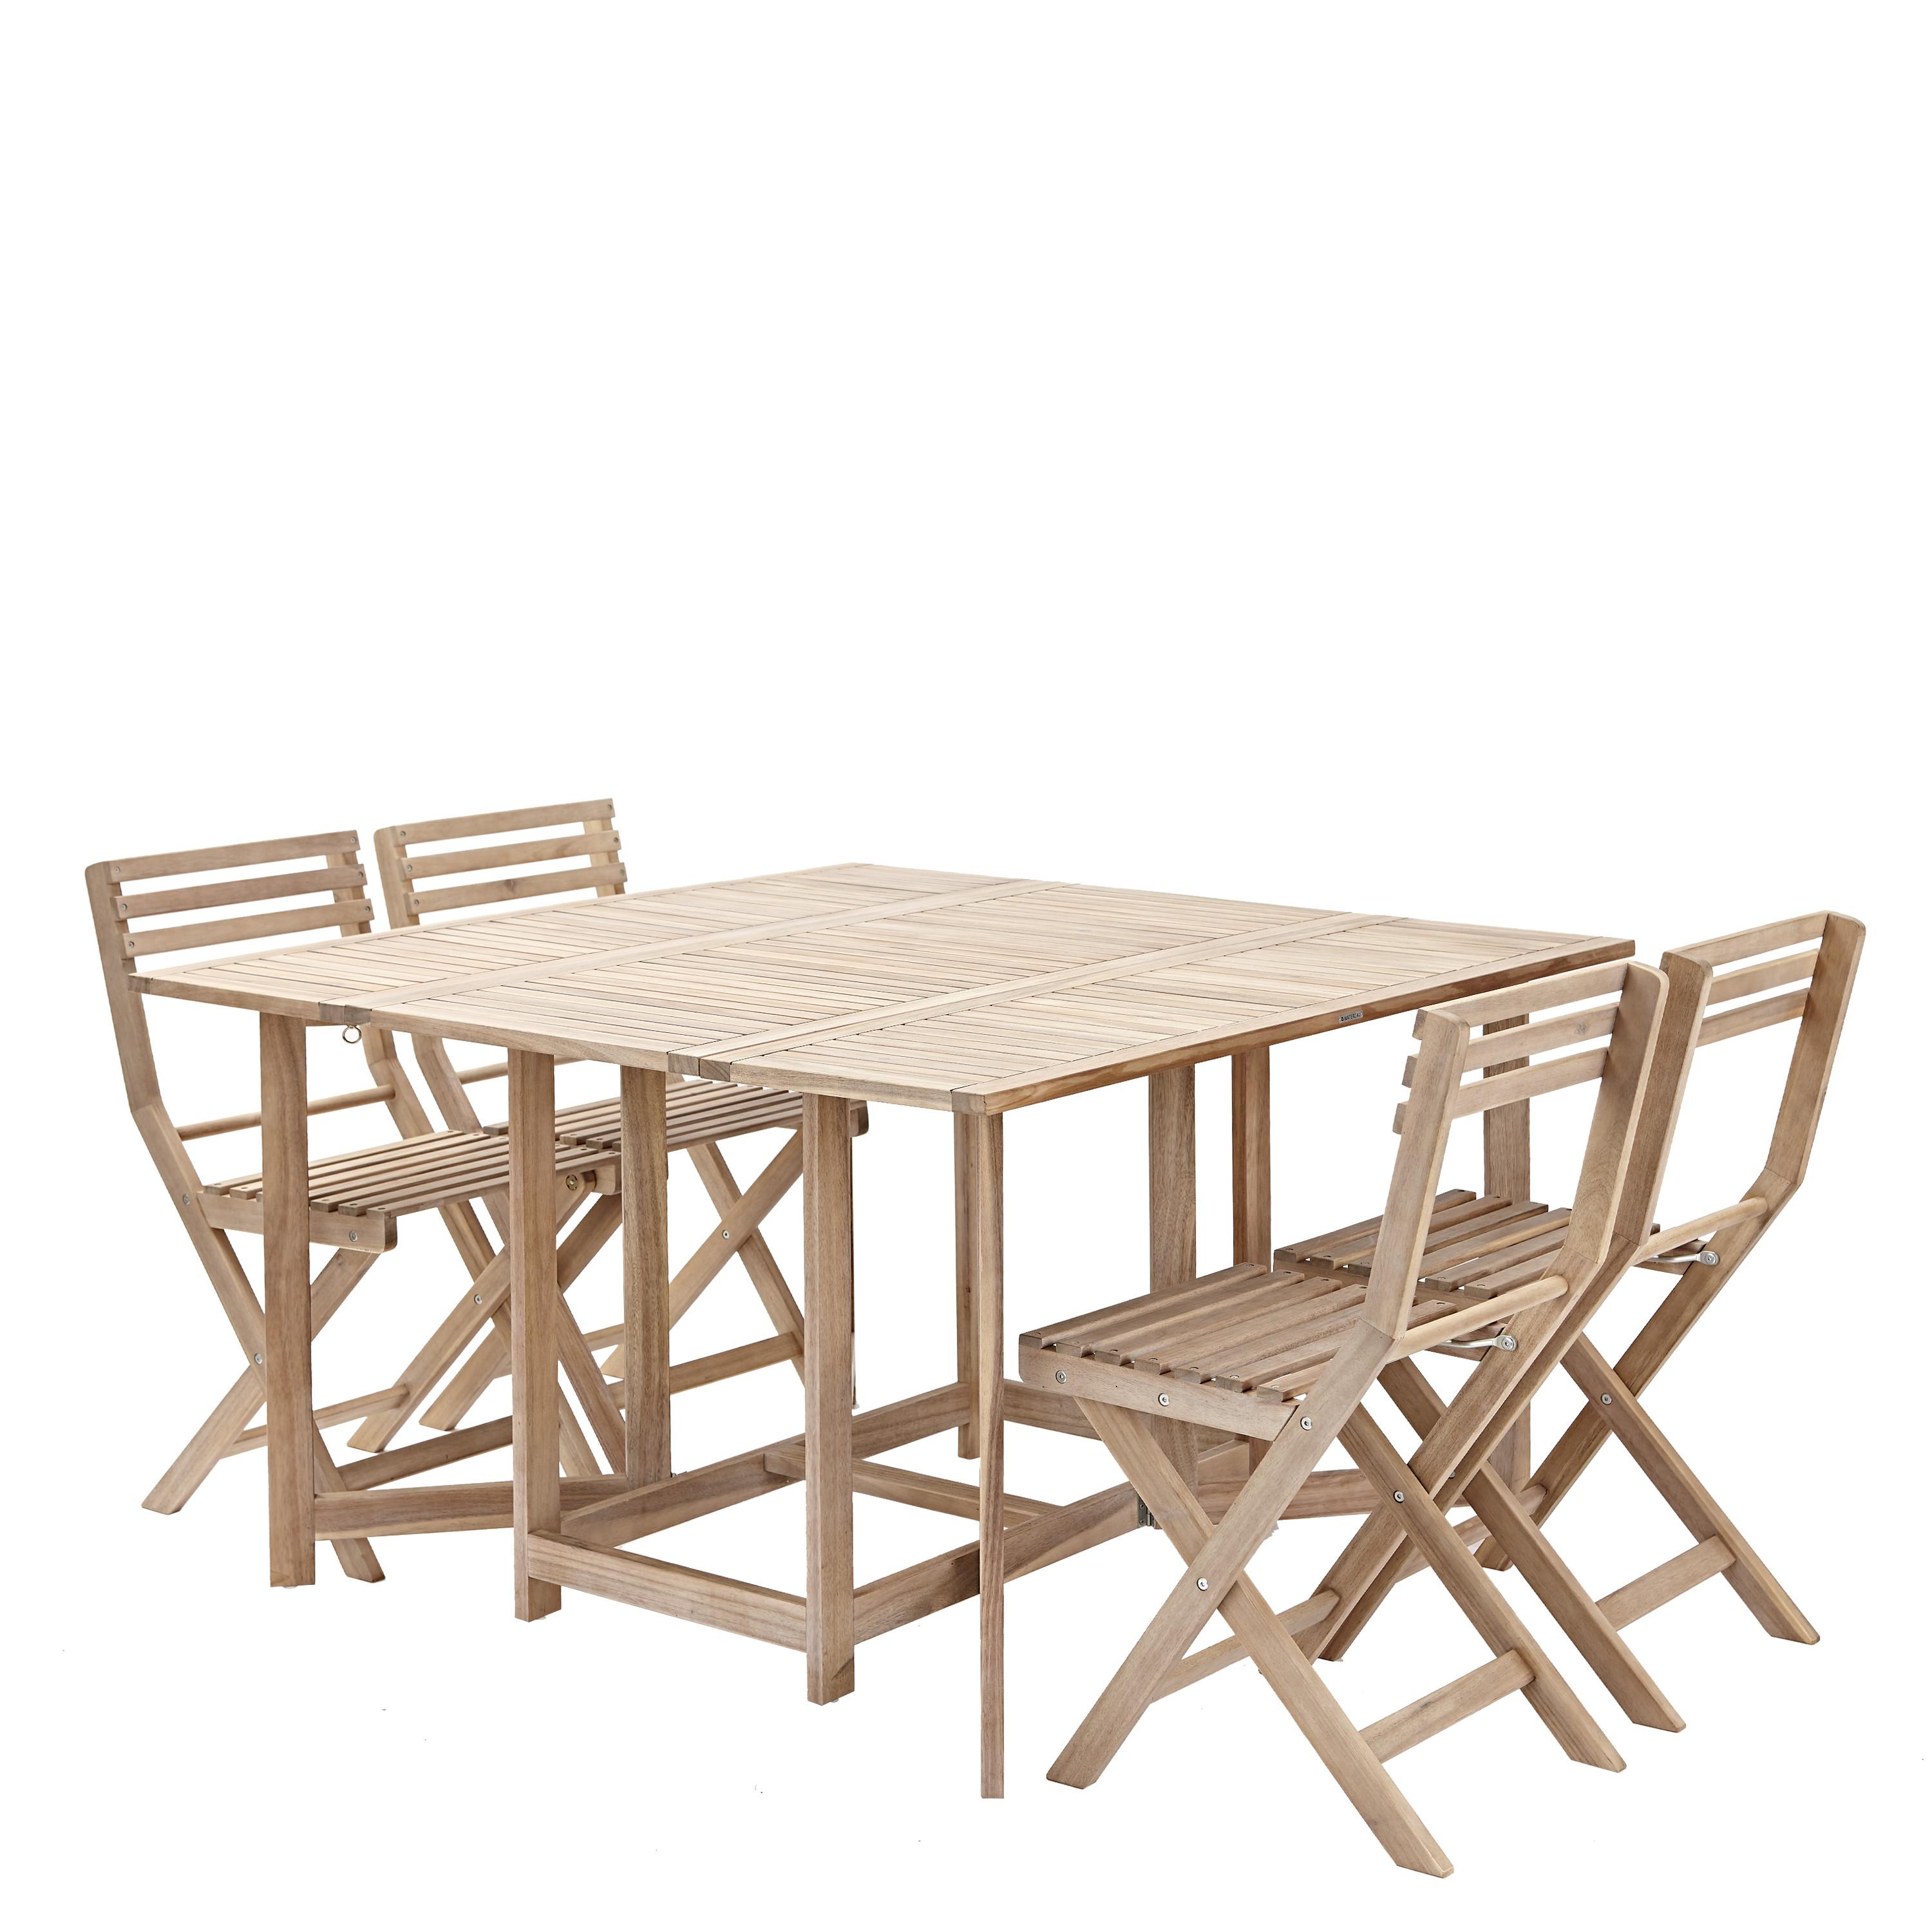 Набор садовой мебели Naterial Origami складной акация: стол и 4 стула .